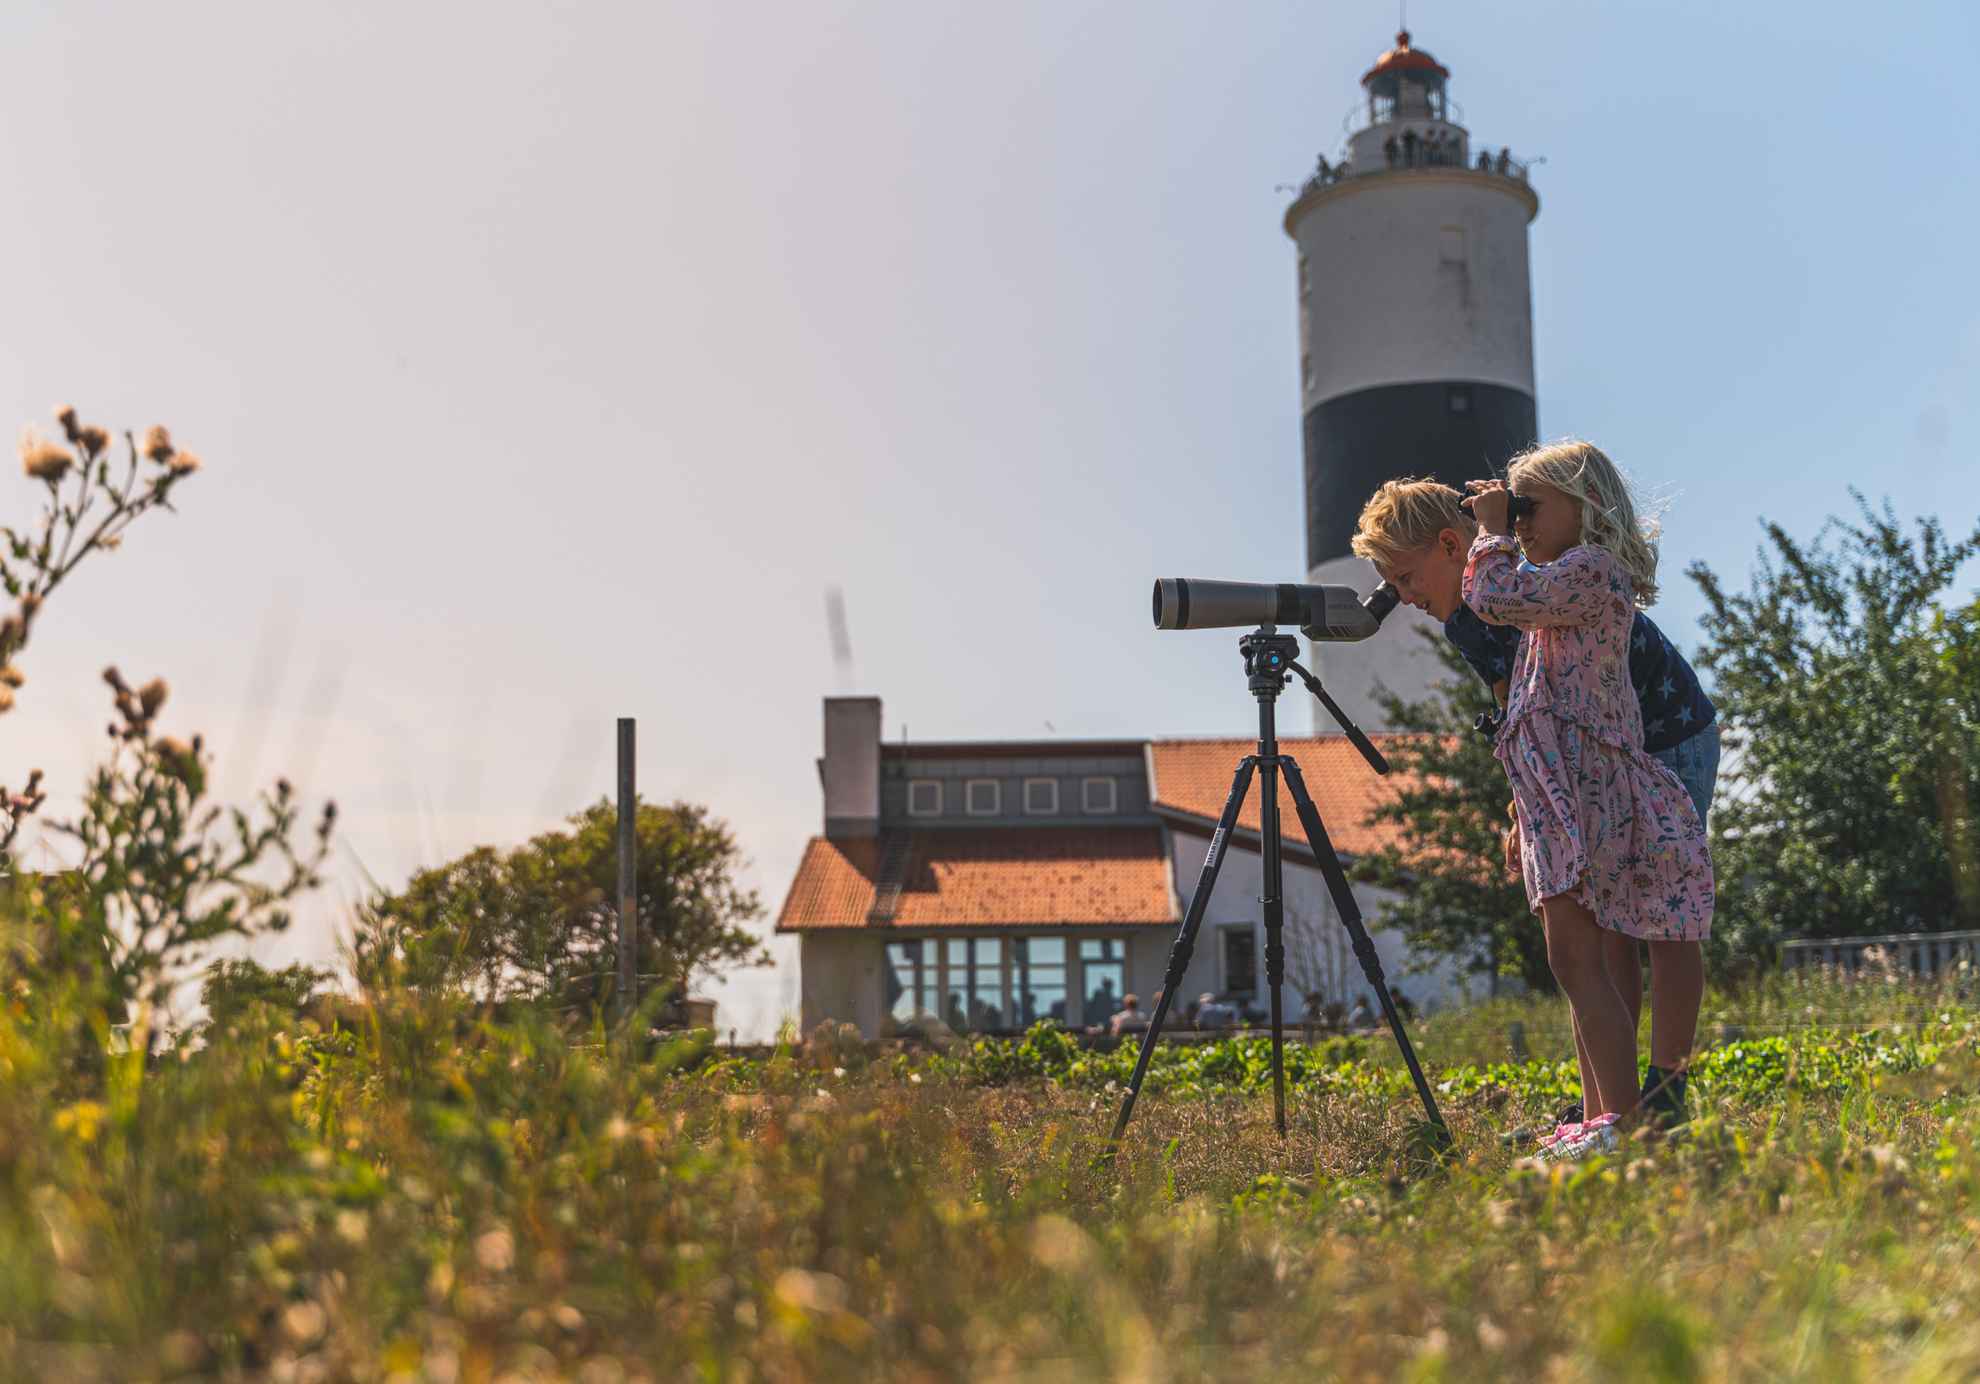 Une fille et un garçon observent des oiseaux à l'aide d'un télescope près du phare Långe Jan sur l'île d'Öland.